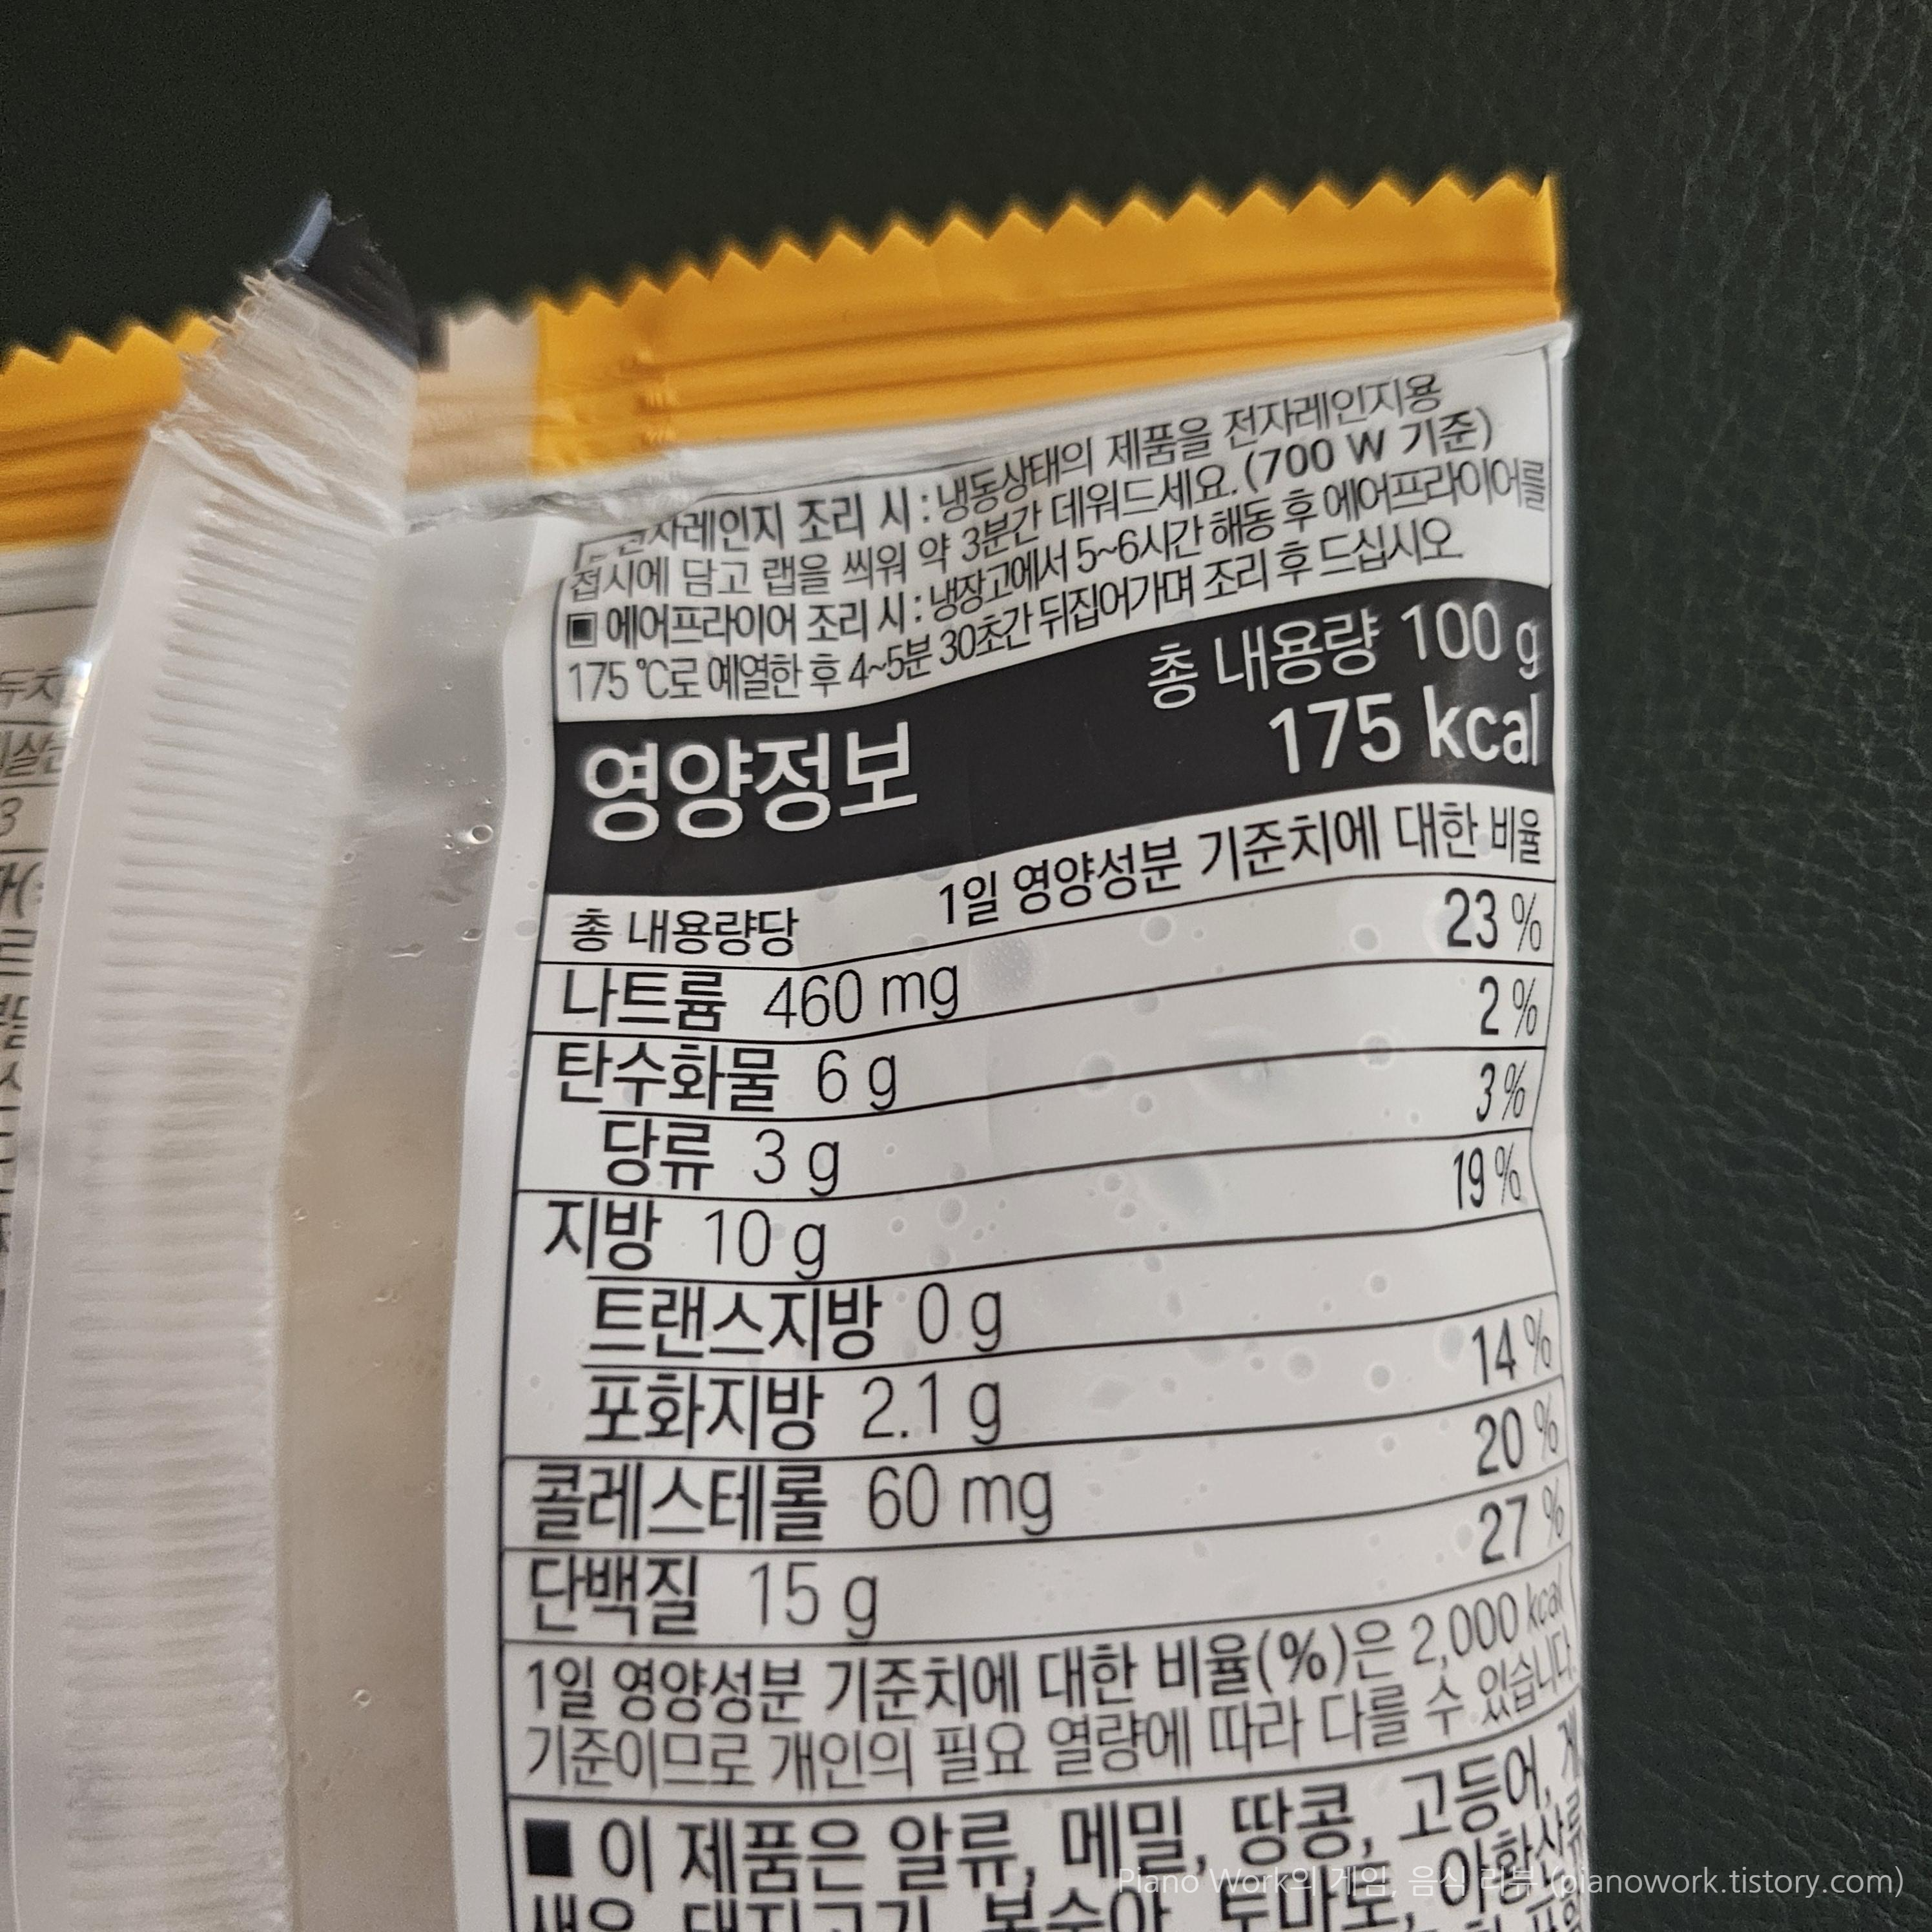 허닭 닭가슴살 함박스테이크 퐁듀치즈 조리방법과 영양정보